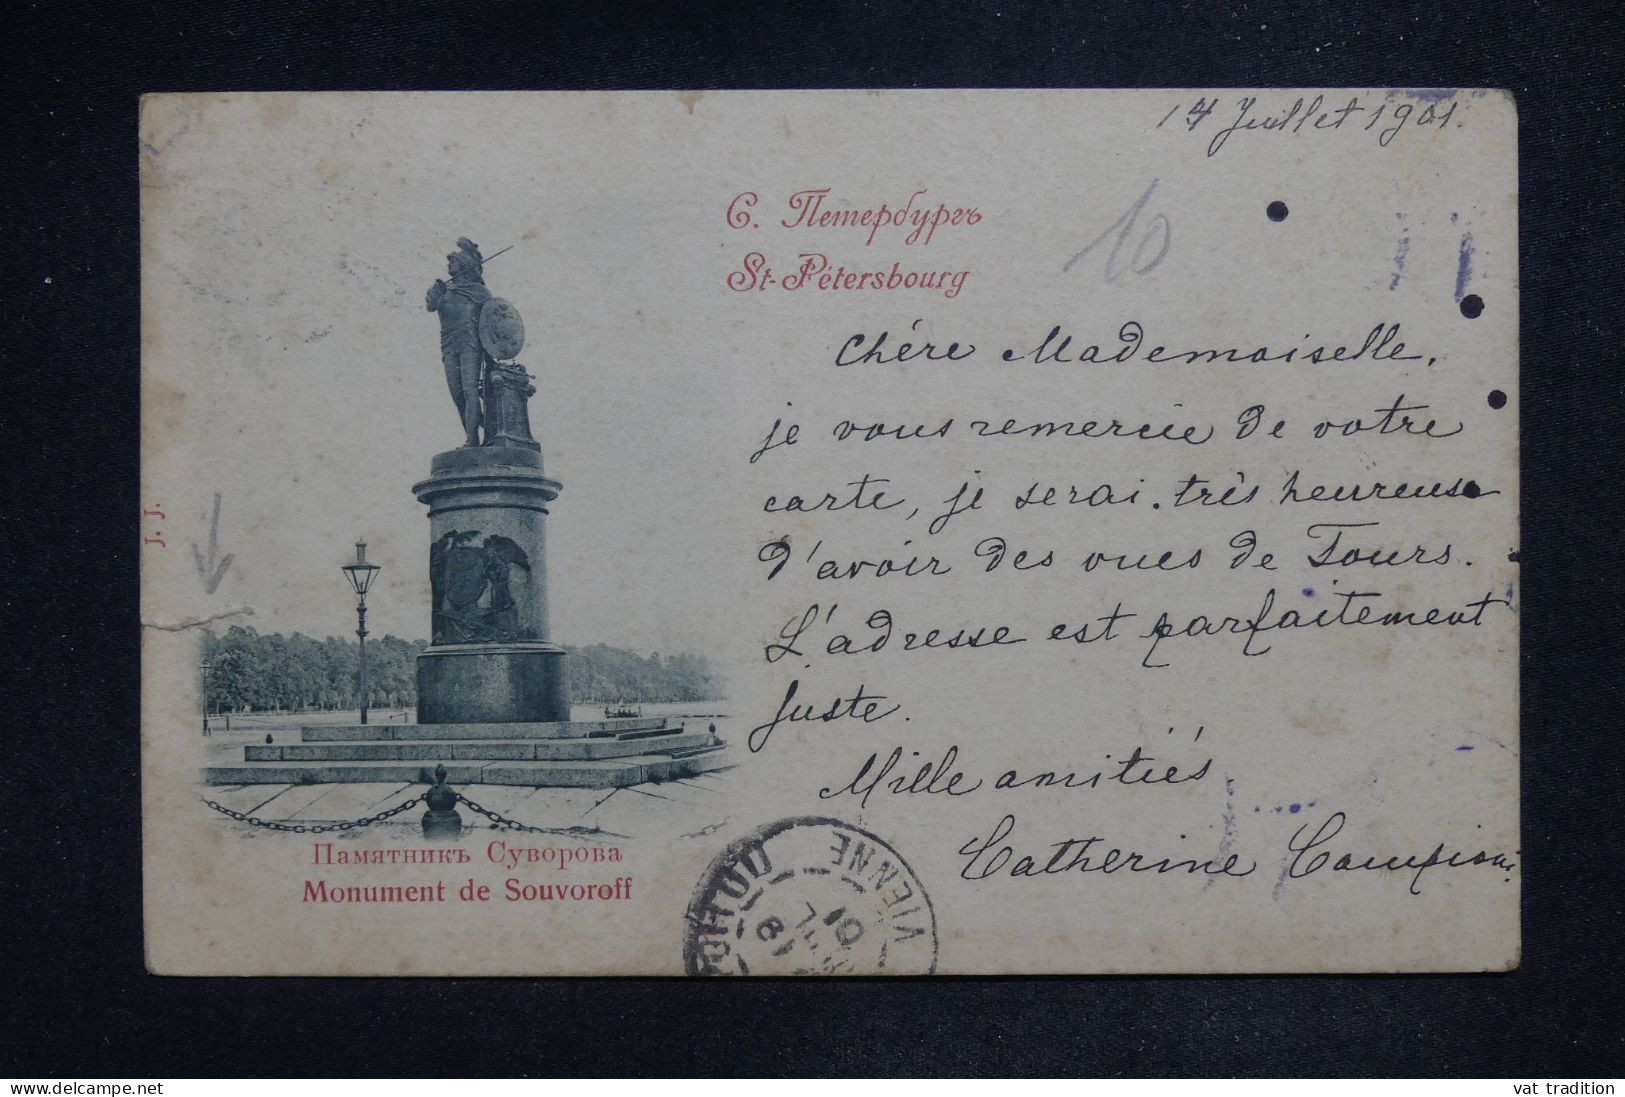 RUSSIE - CPA De 1901 Pour La France - Défauts - A 2764 - Brieven En Documenten